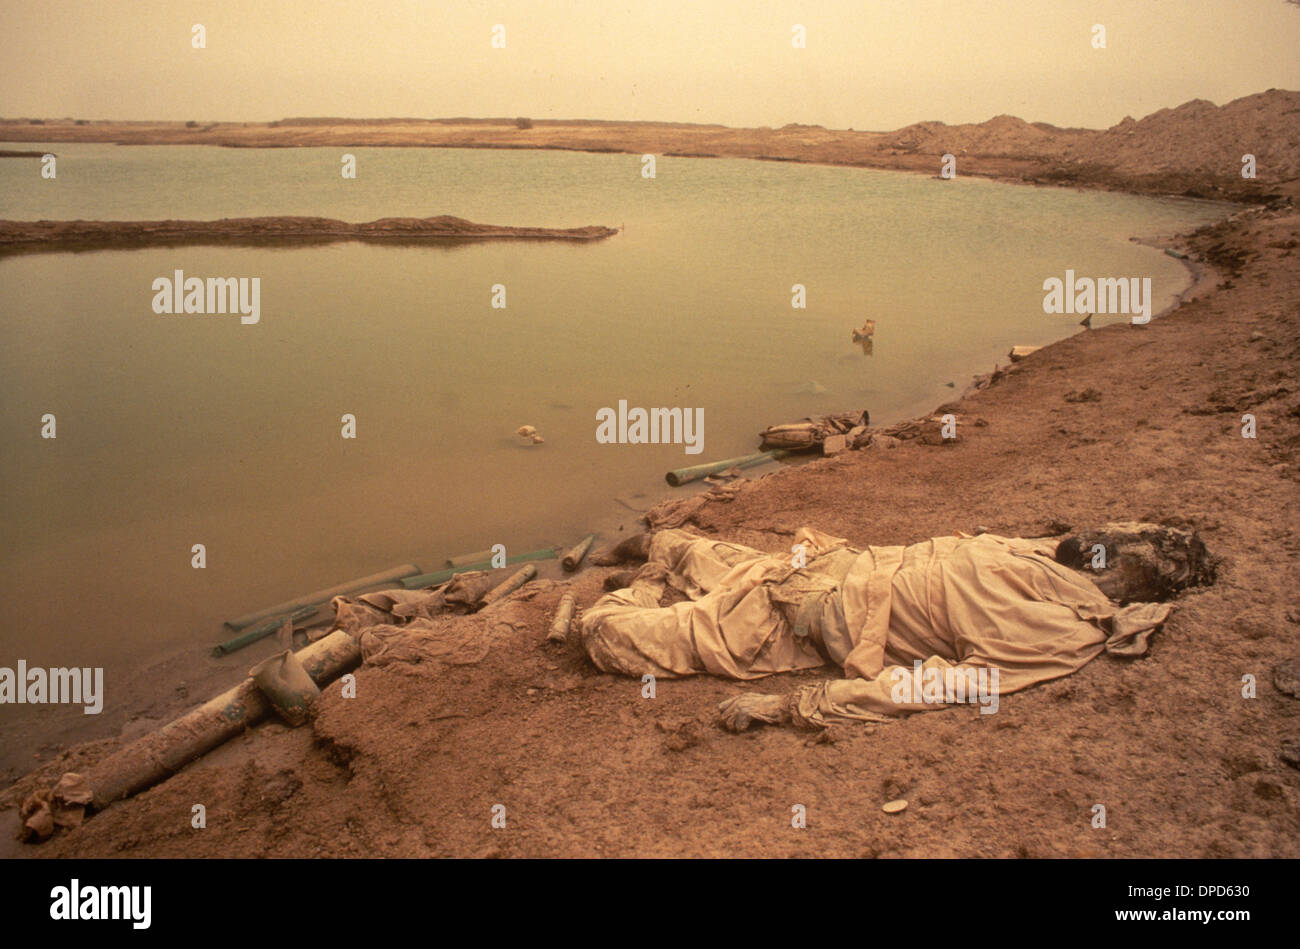 Iranirakkrieg, auch bekannt als erster persischer Golfkrieg oder Golfkrieg 1984. Ein toter Soldat in den Mesopotamien-Mooren. Ein Sandsturm in der Luft. Nahe Basra, Südirak. 1980er HOMER SYKES Stockfoto